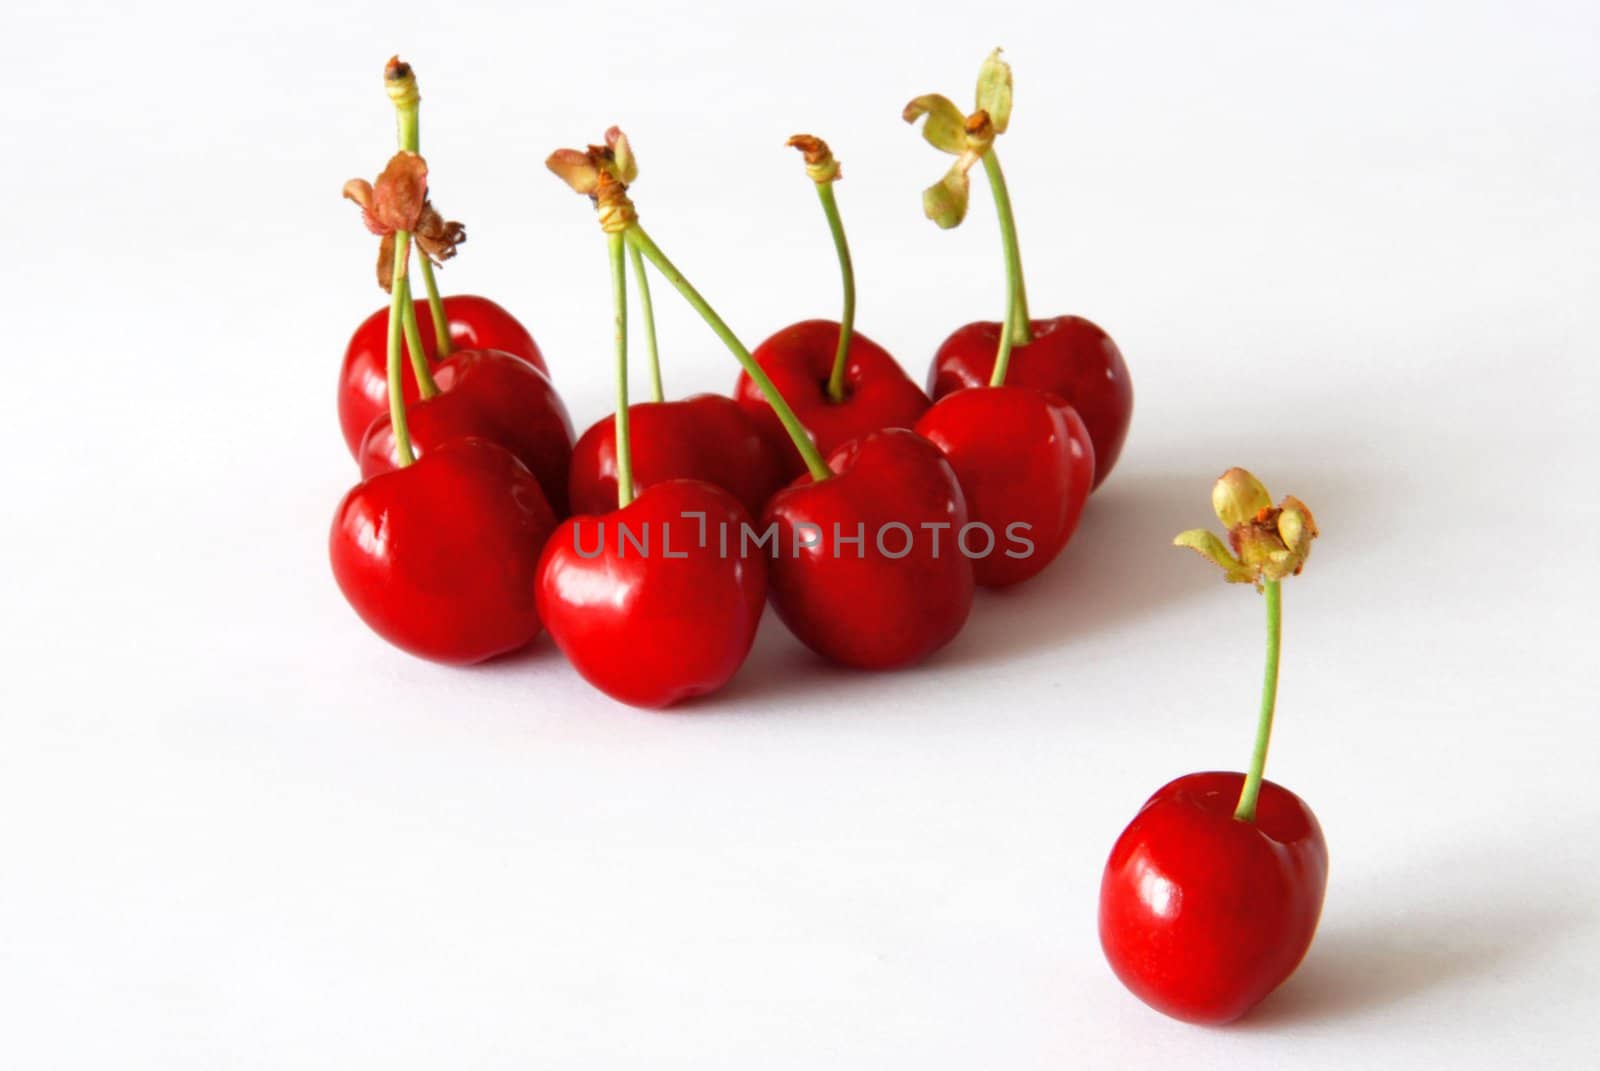 Sweet cherries by Yaurinko